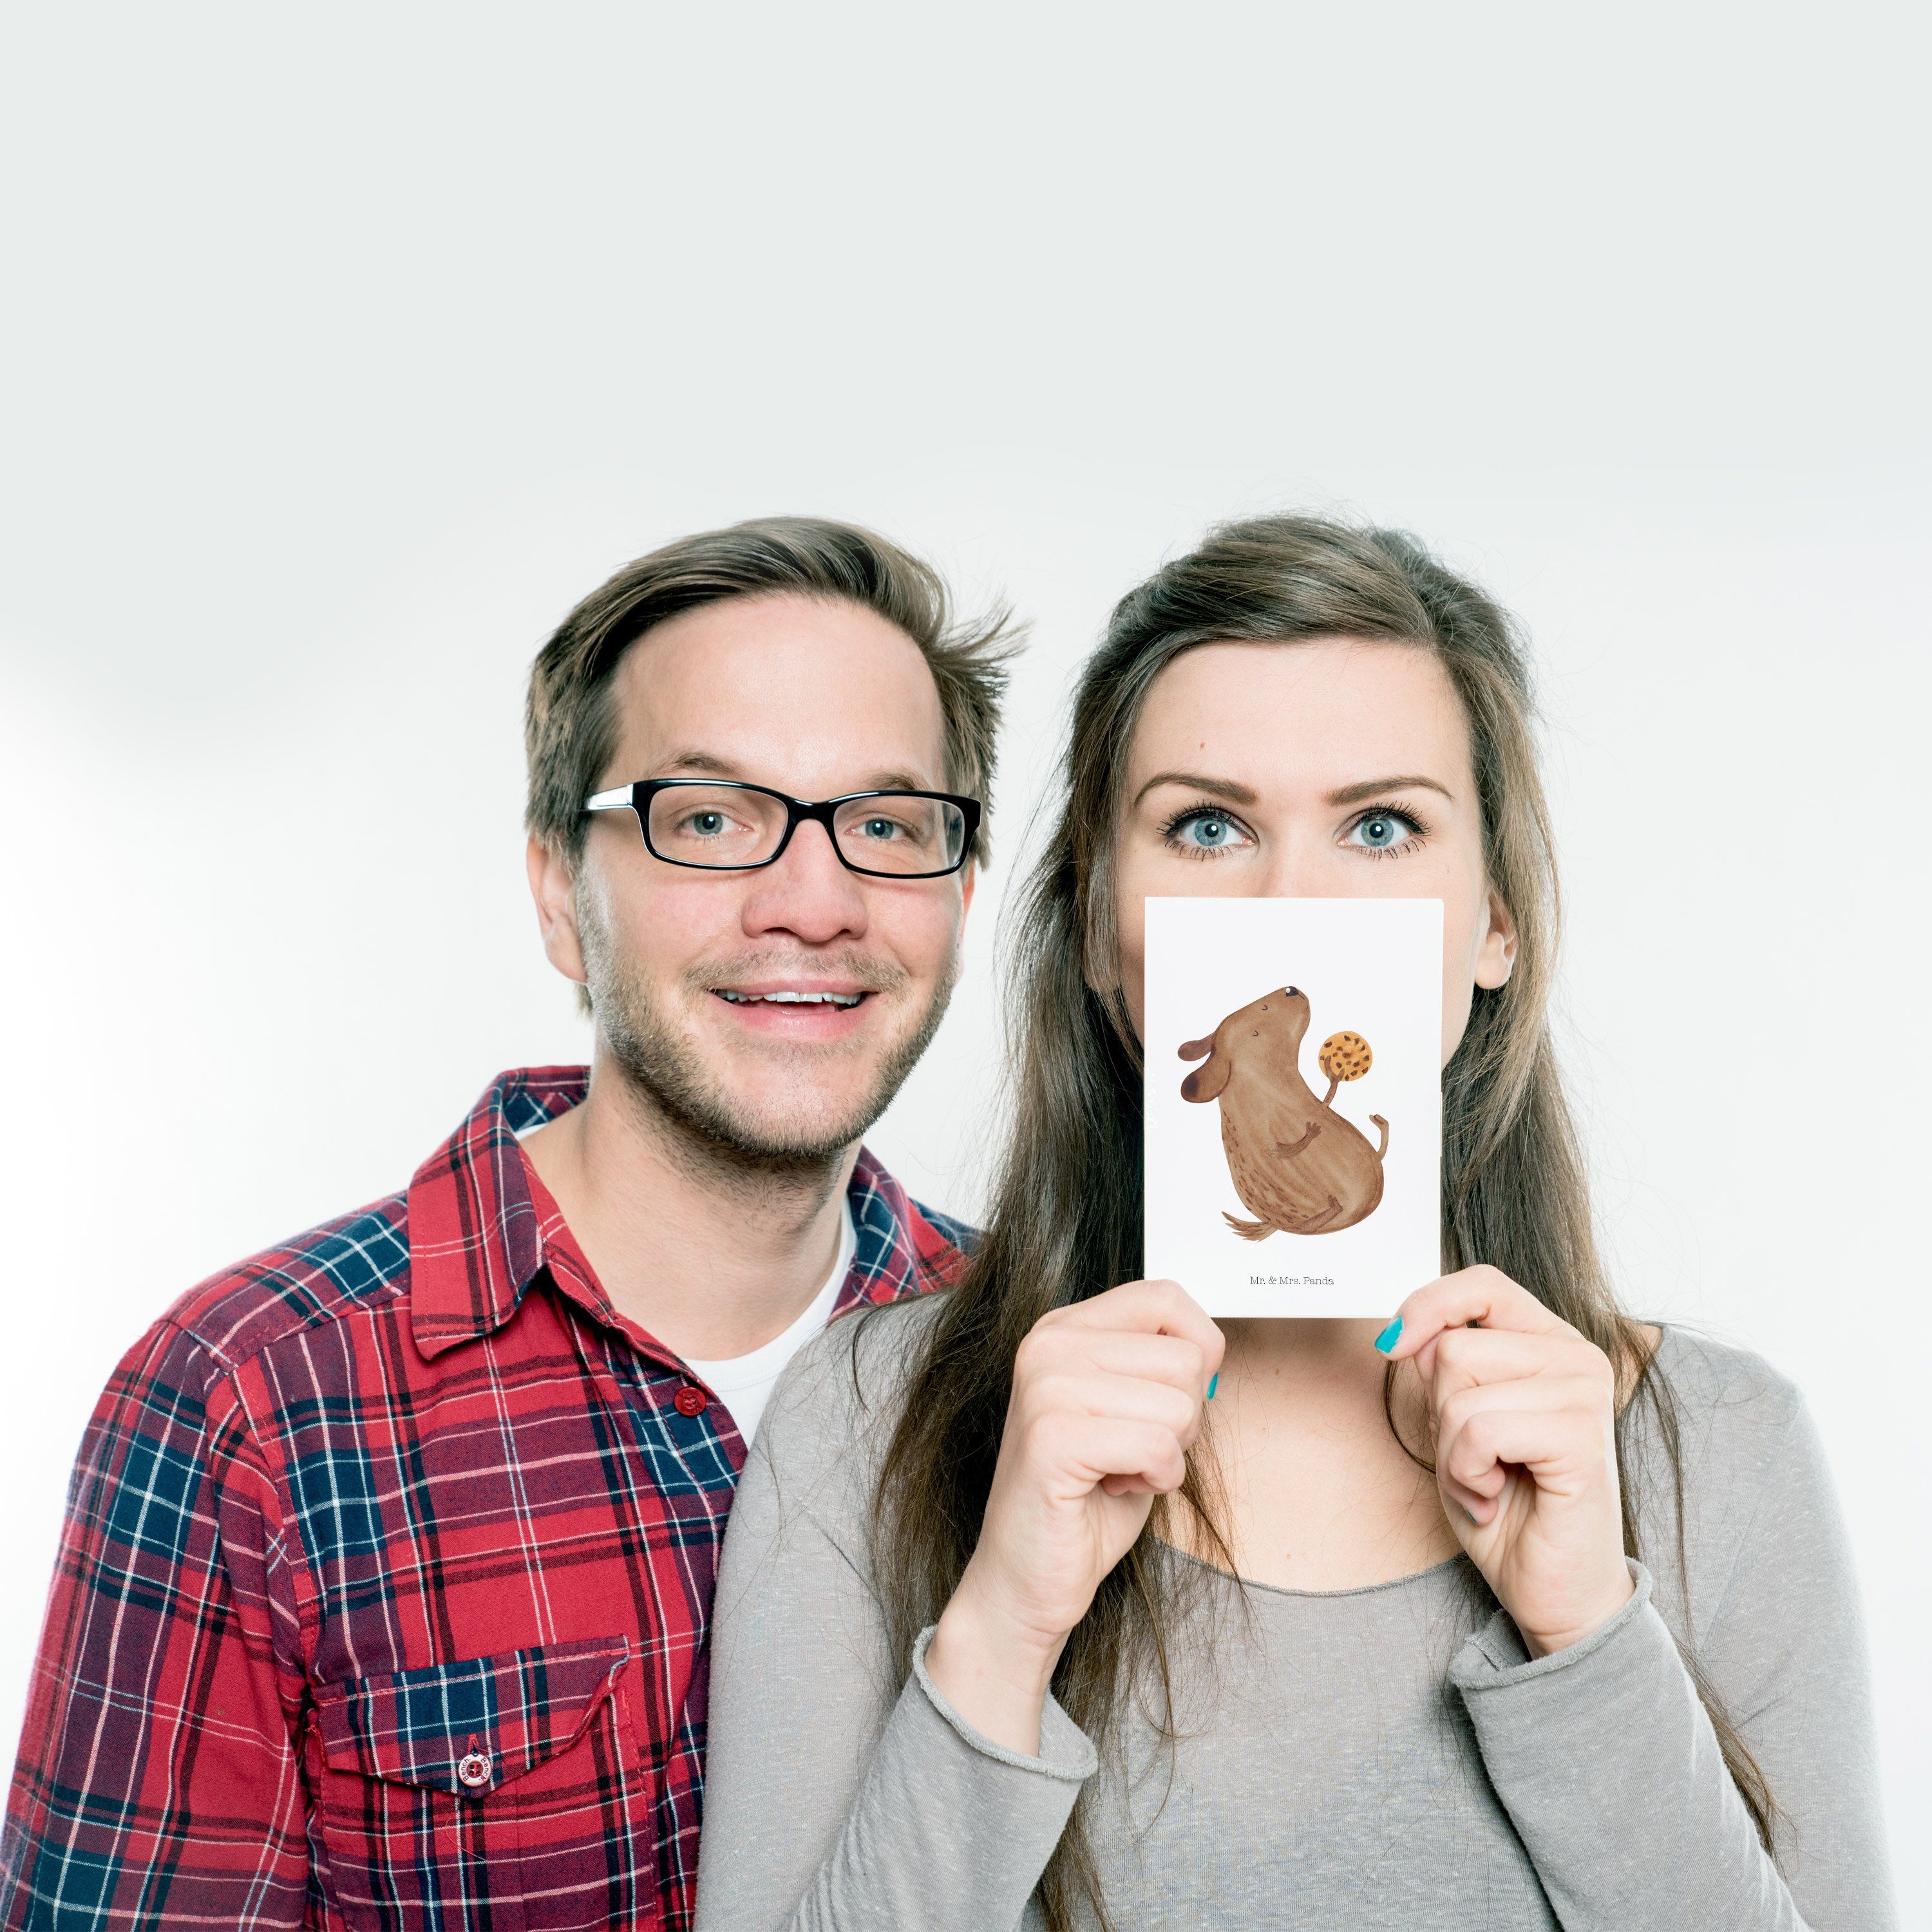 Mr. & Tierliebhaber, - Mrs. Hund Einladungskarte, Geschenk, glücklic Panda Weiß Postkarte Keks 